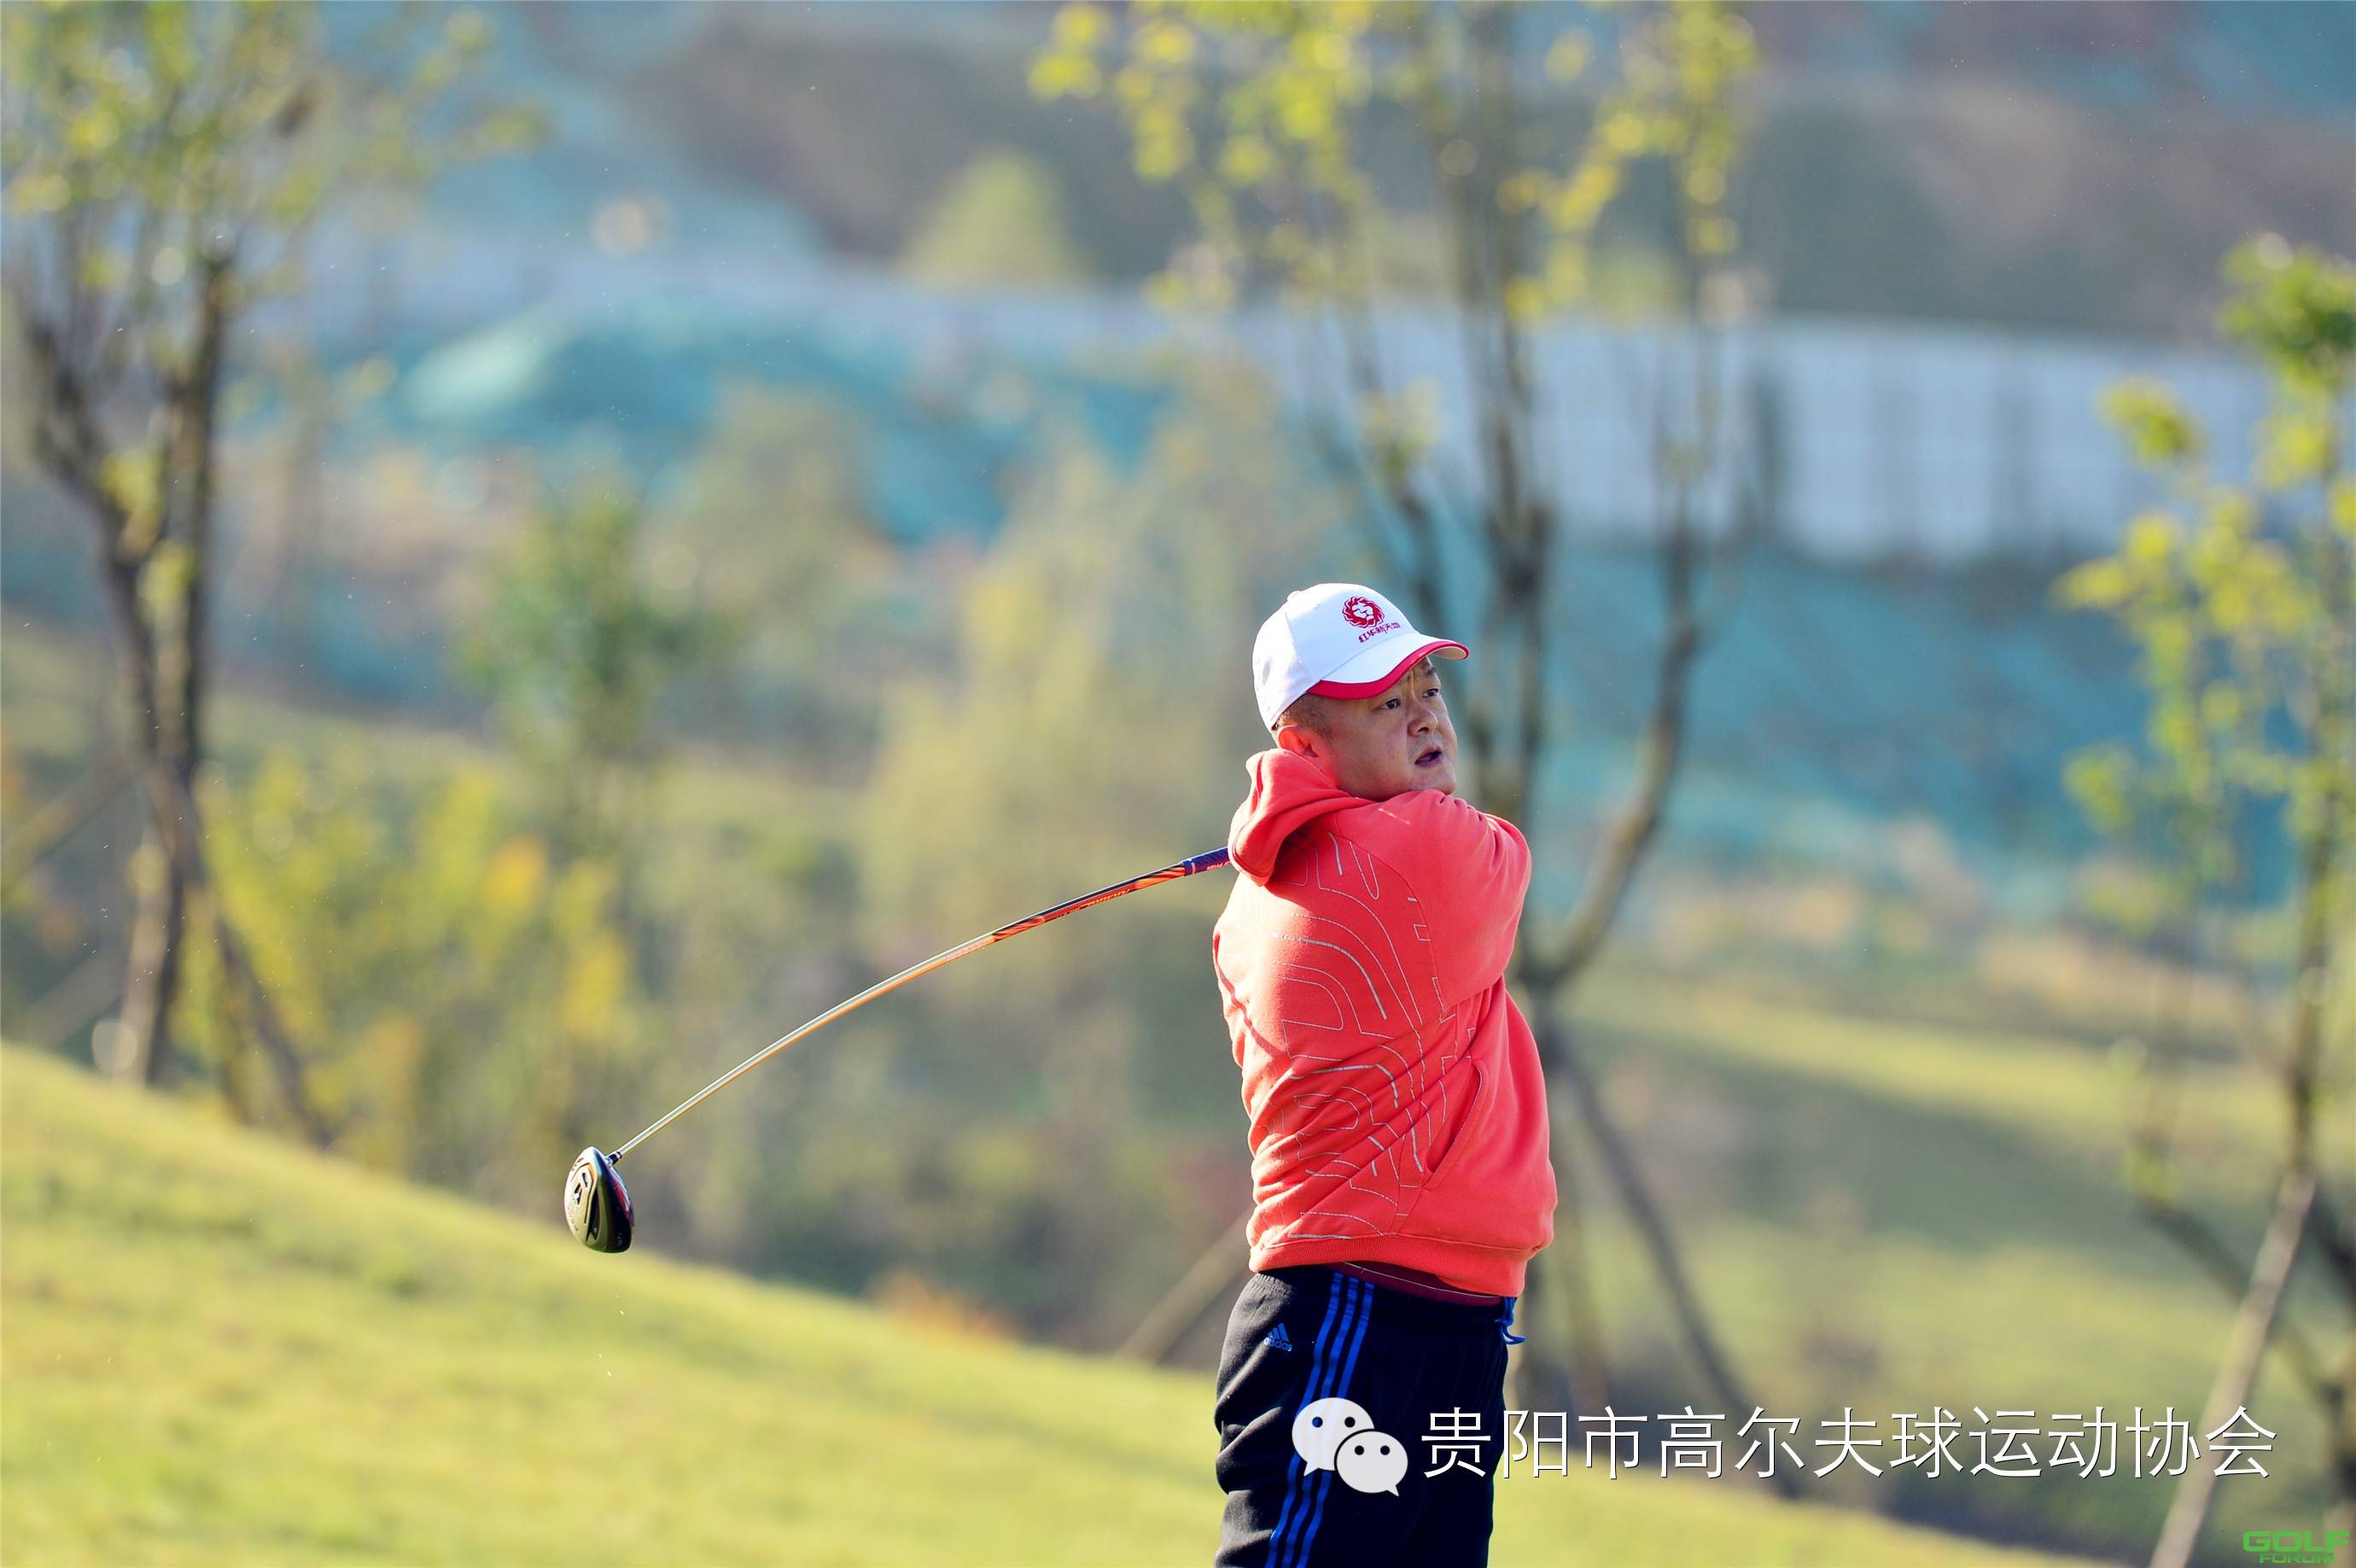 2014红华杯·贵州业余高尔夫锦标赛球员风采第三组丁劲松刘天佑 ...